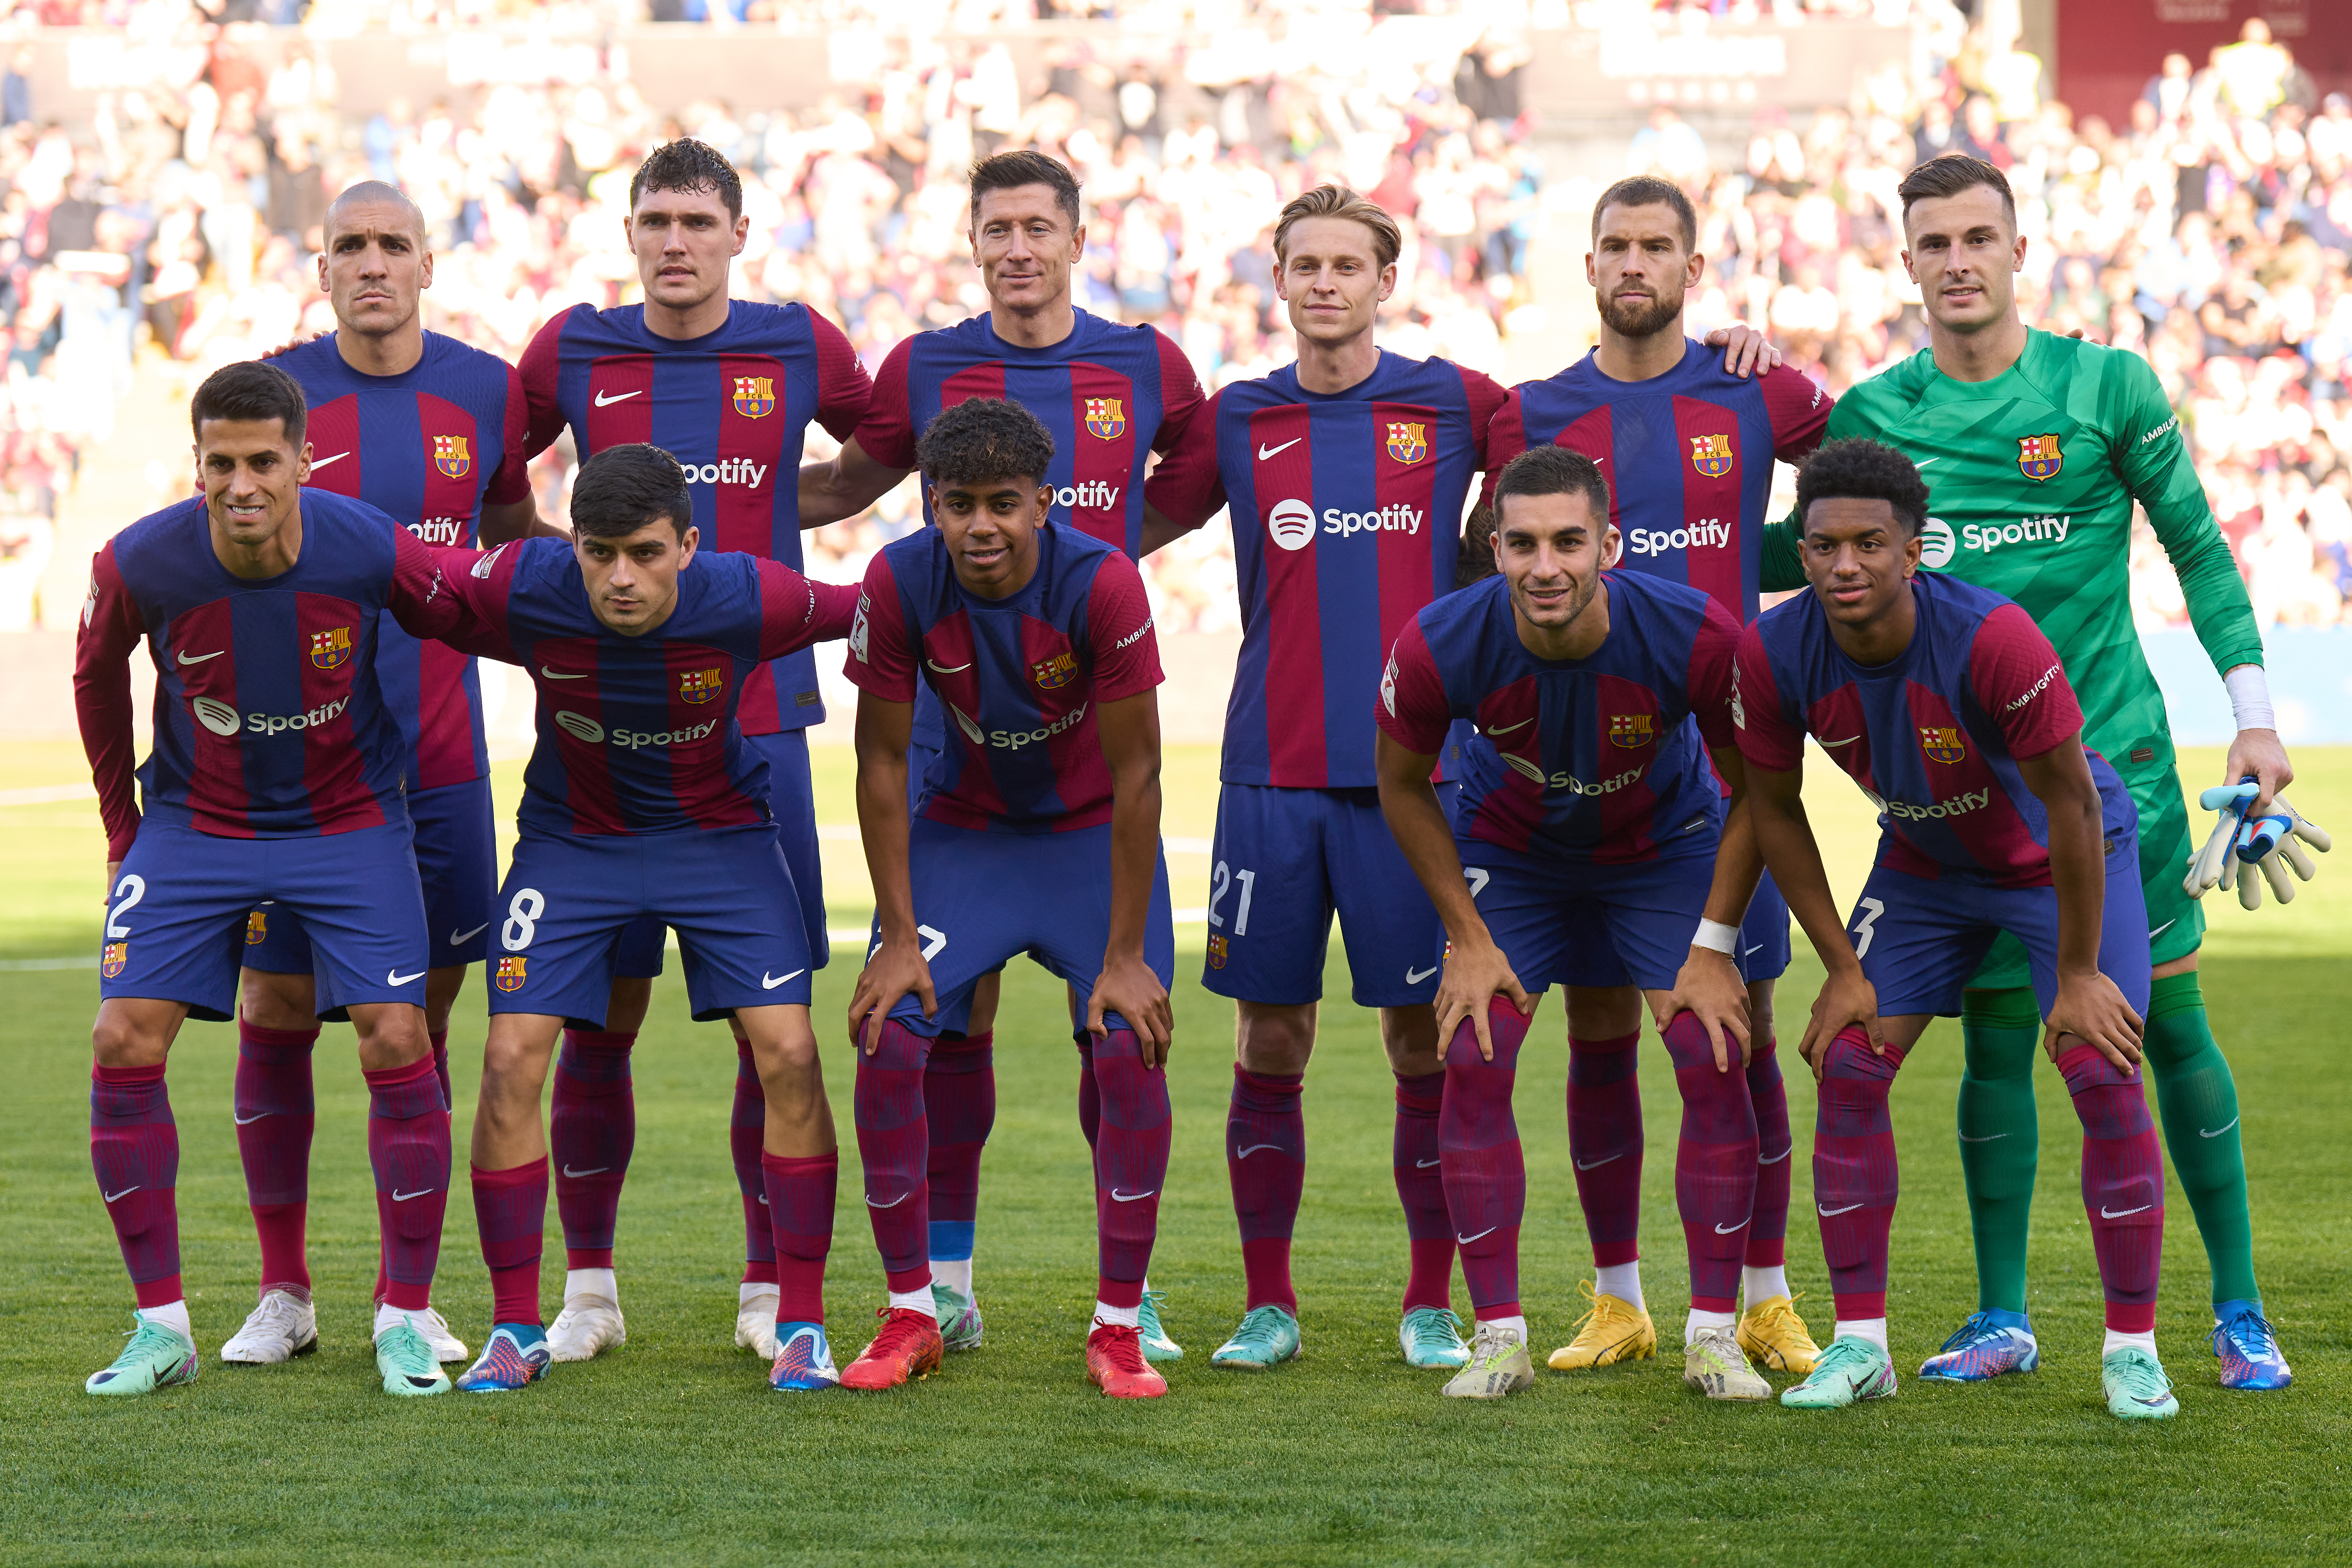 Jugadores de fútbol club barcelona